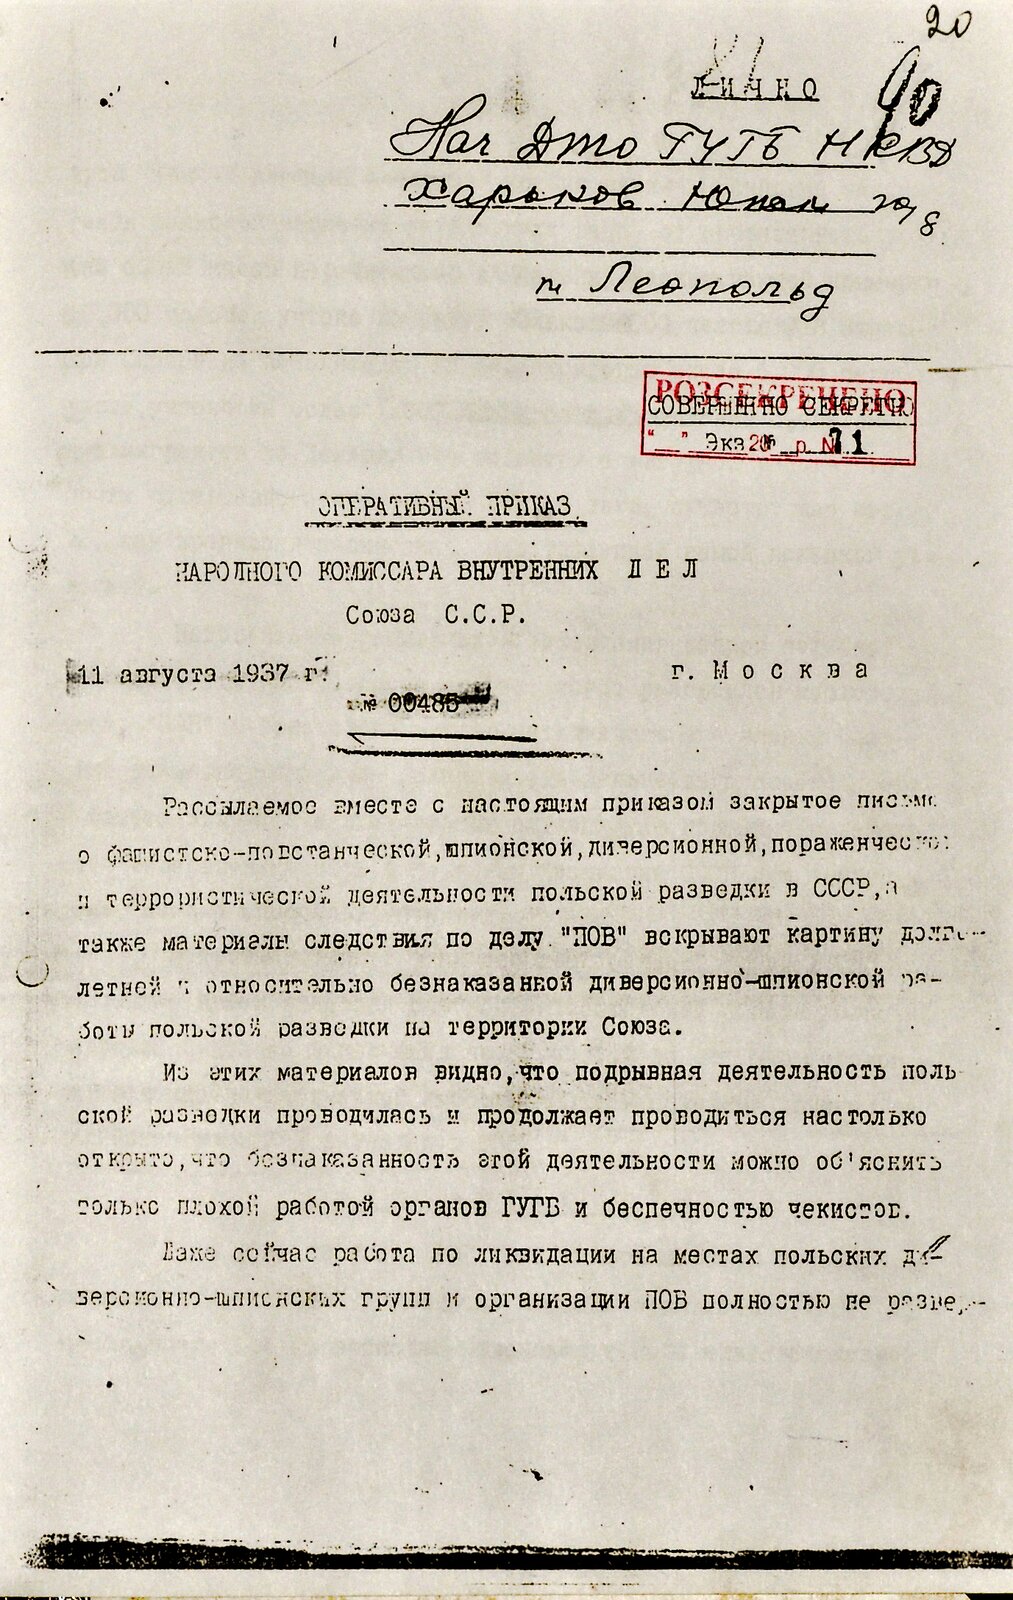 Zdjęcie przedstawia kartkę dokumentu służbowego, napisanego na maszynie po rosyjsku. W górnym, prawym rogu czerwony stempel. 